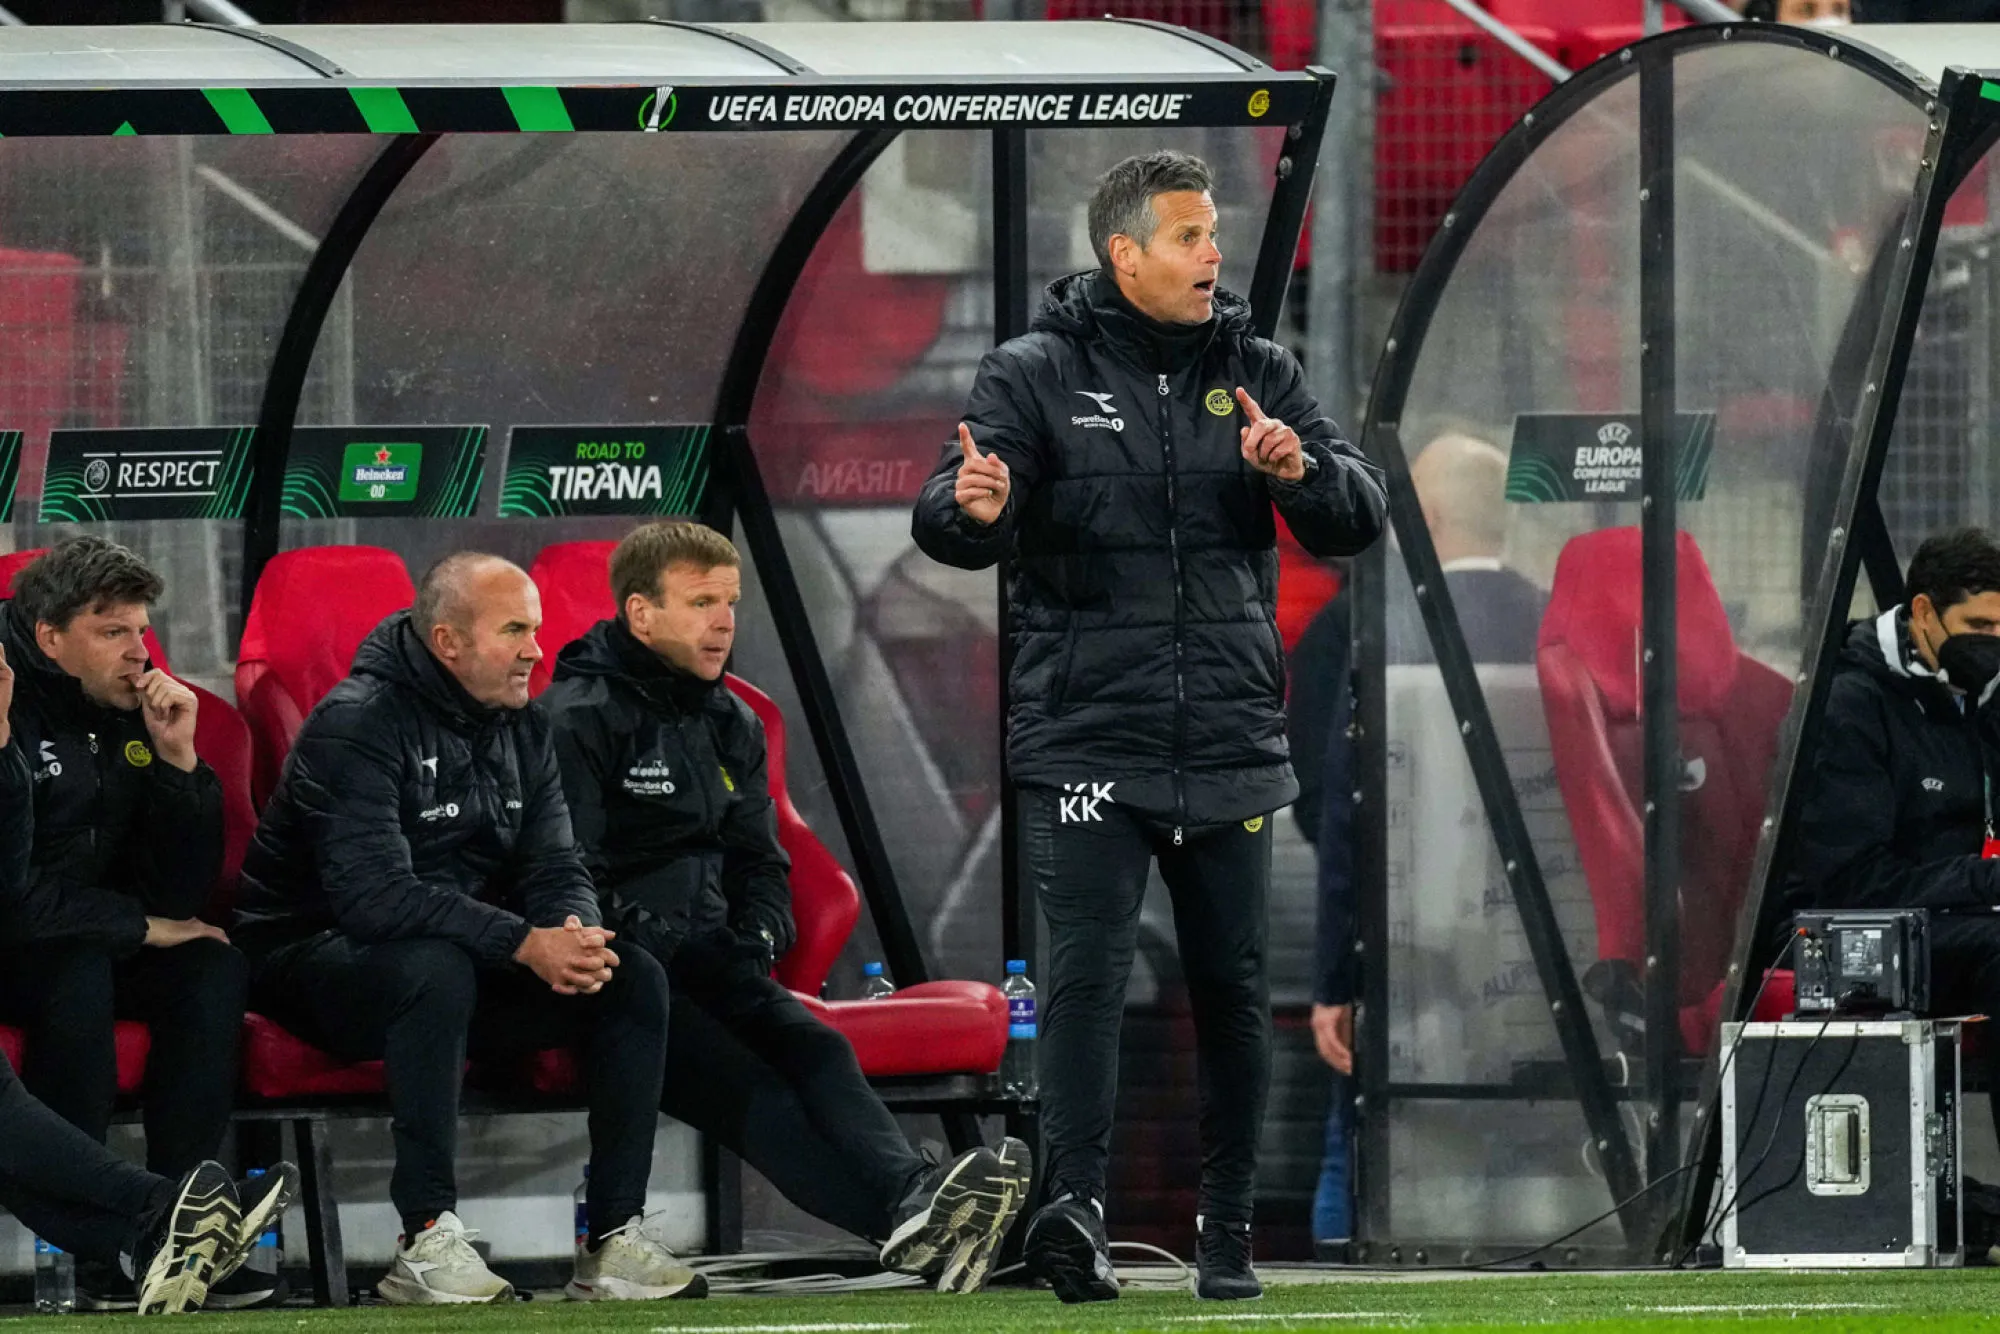 L’entraîneur de Bodø/Glimt accusé d’avoir frappé un membre du staff de la Roma